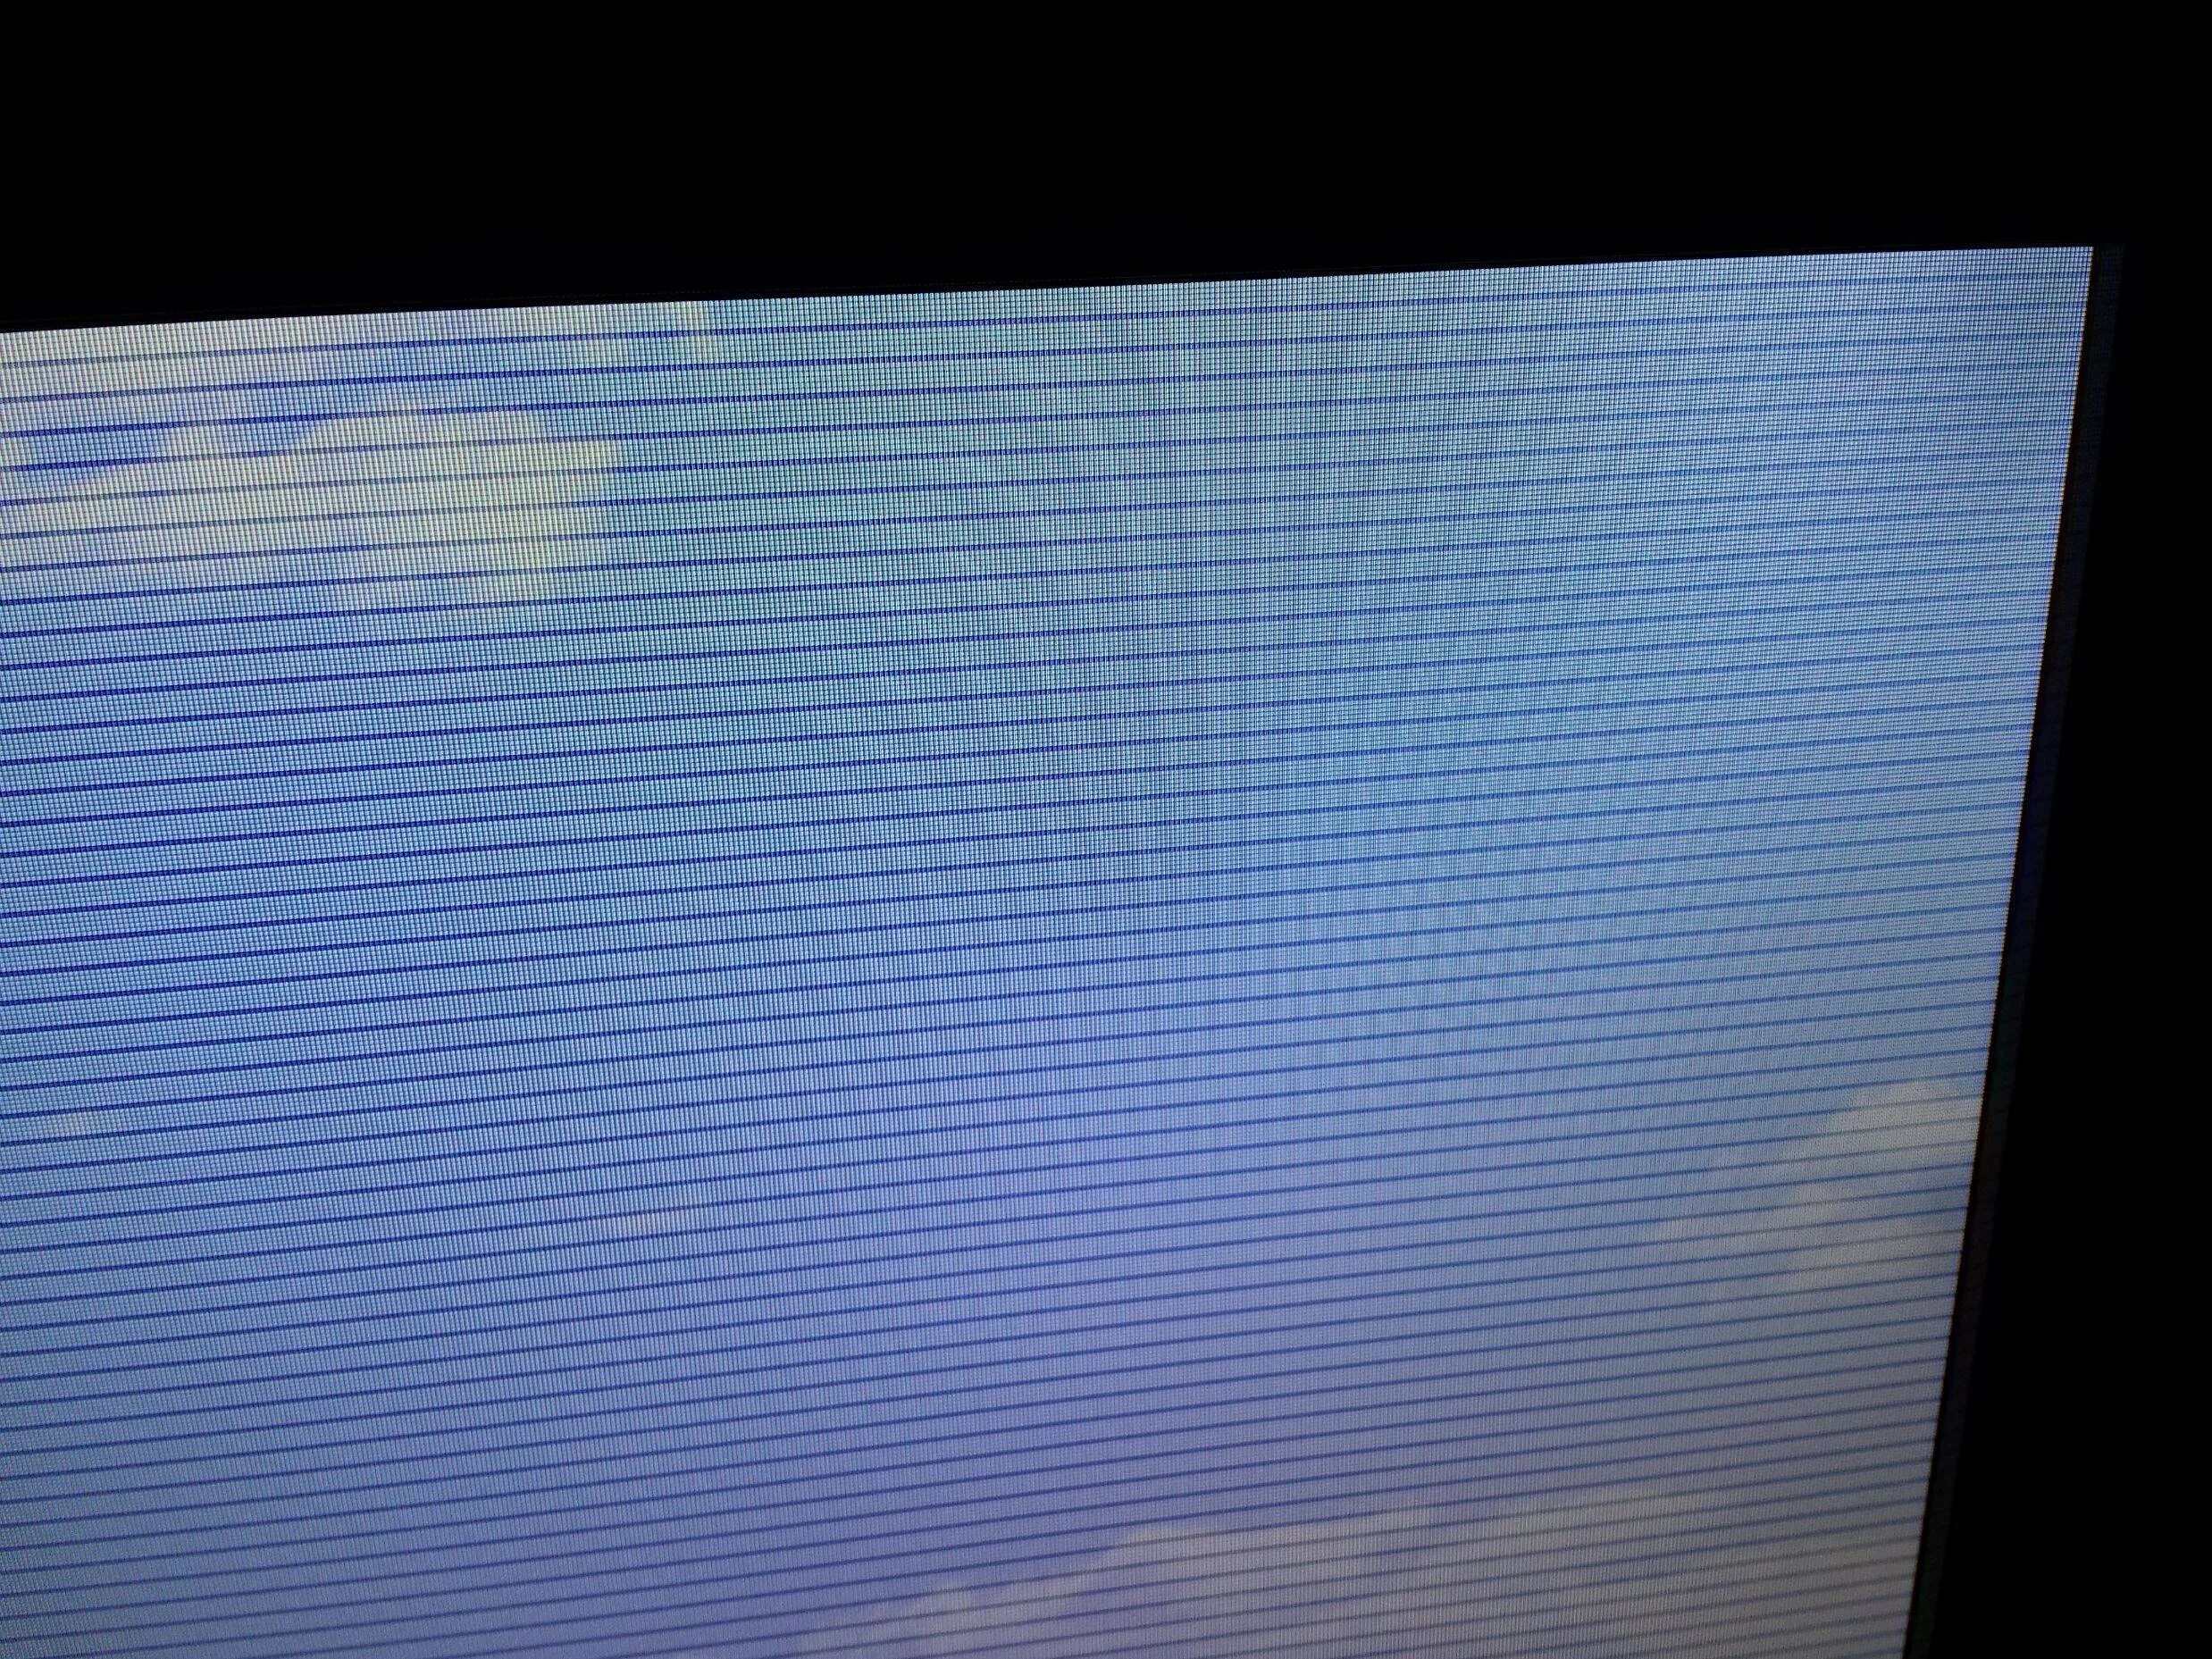 Полоса сверху экрана. Телевизор самсунг рябит экран. Телевизор Филипс горизонтальные полосы на экране. Lta400hm15 горизонтальные полосы. Чёрные вертикальные полосы на экране телевизора самсунг.